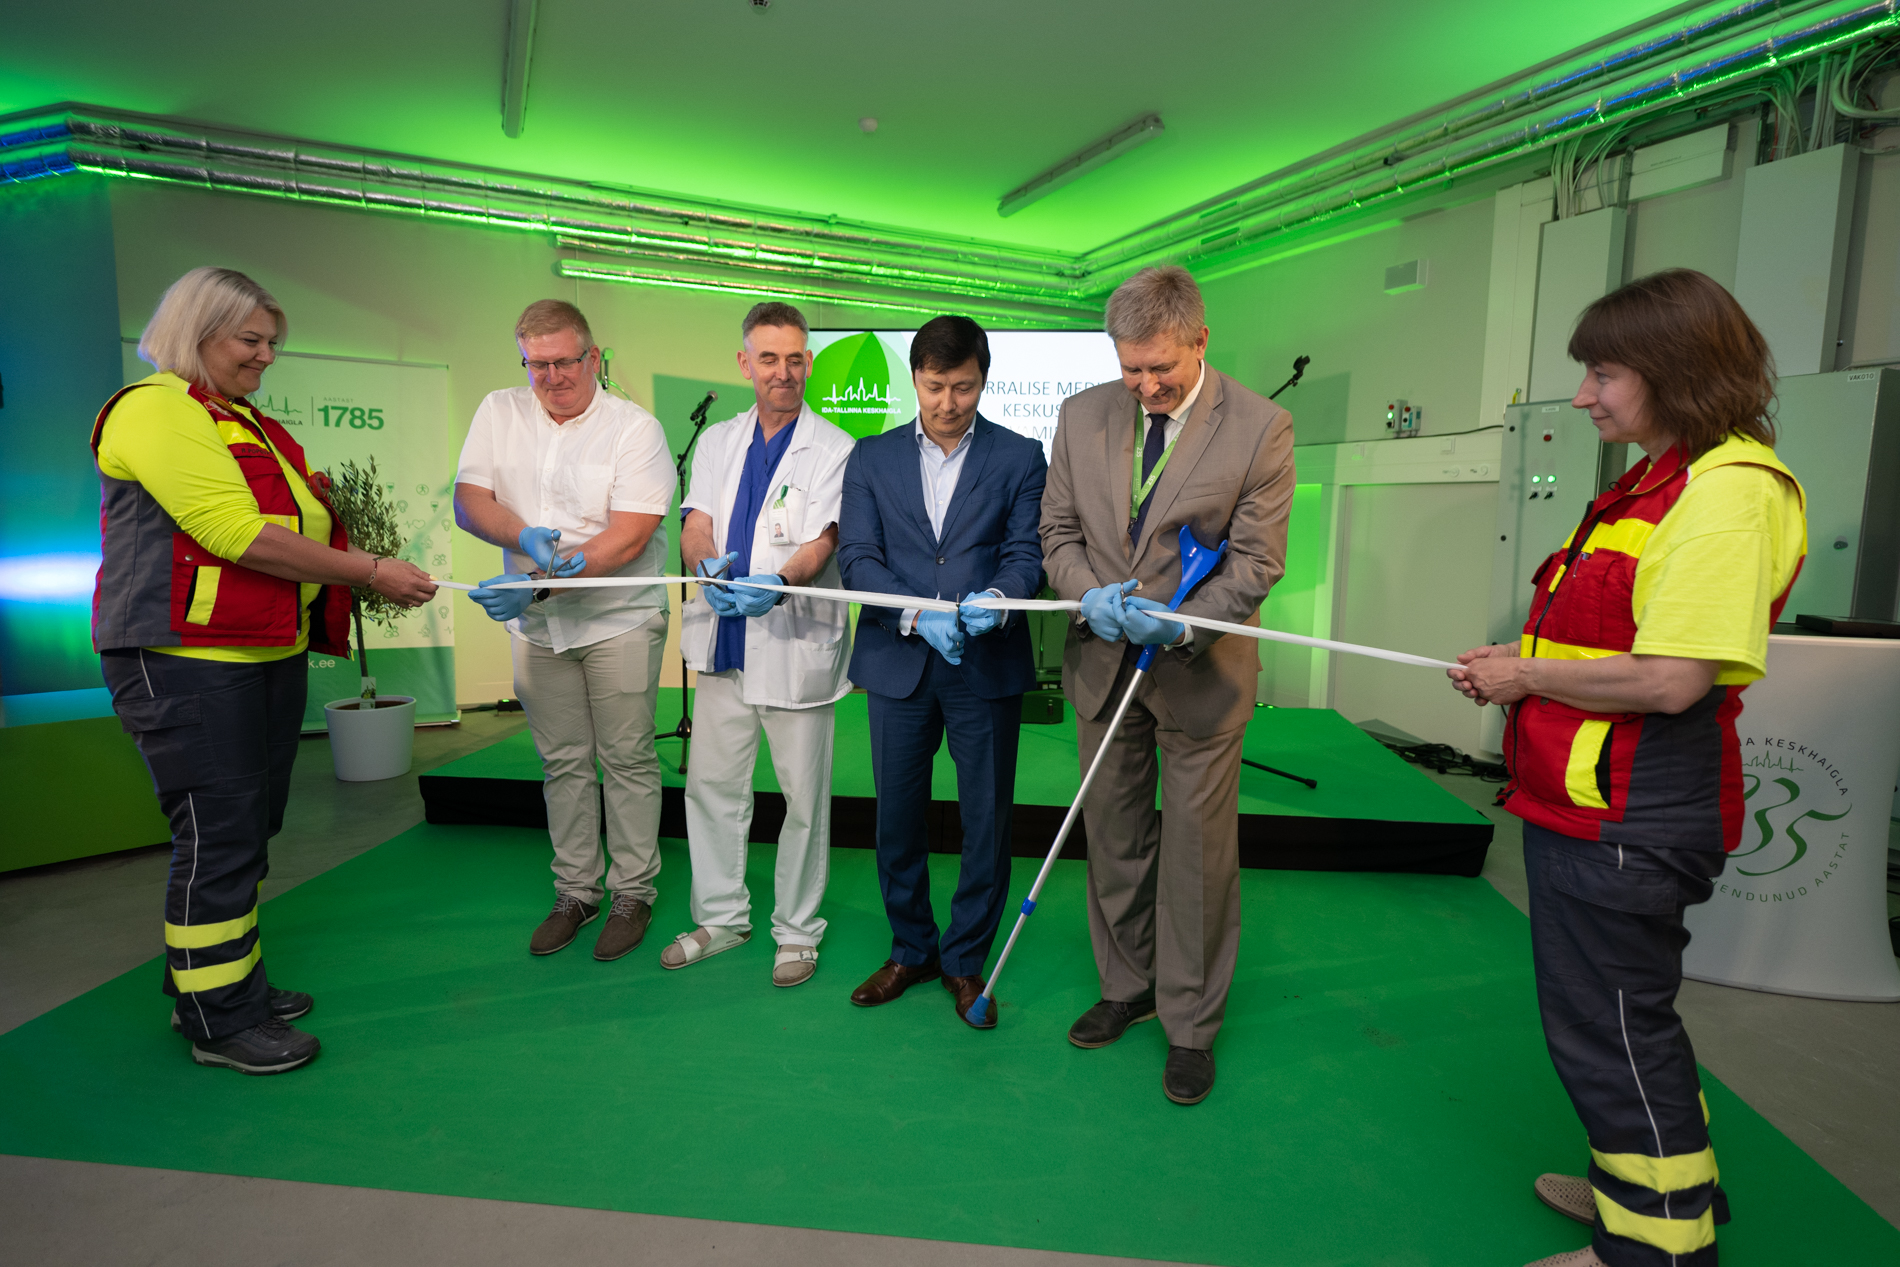 Ida-Tallinna Keskhaigla avas uuenenud erakorralise meditsiini keskuse